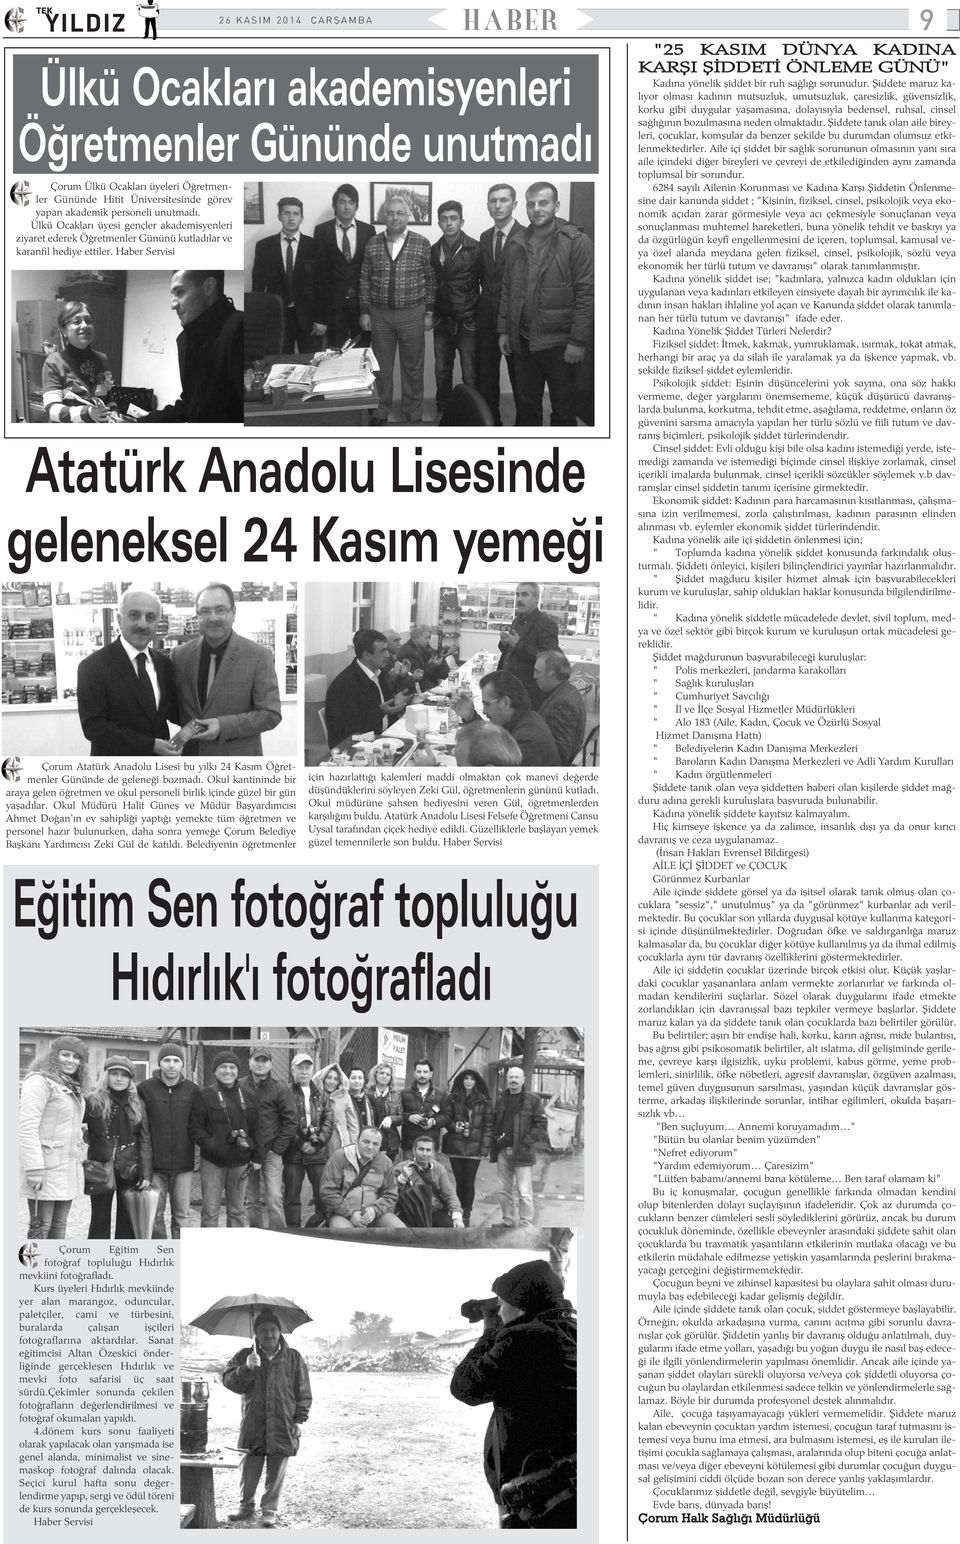 Atatürk Anadolu Lisesinde geleneksel 24 Kasým yemeði Çorum Atatürk Anadolu Lisesi bu yýlký 24 Kasým Öðretmenler Gününde de geleneði bozmadý.